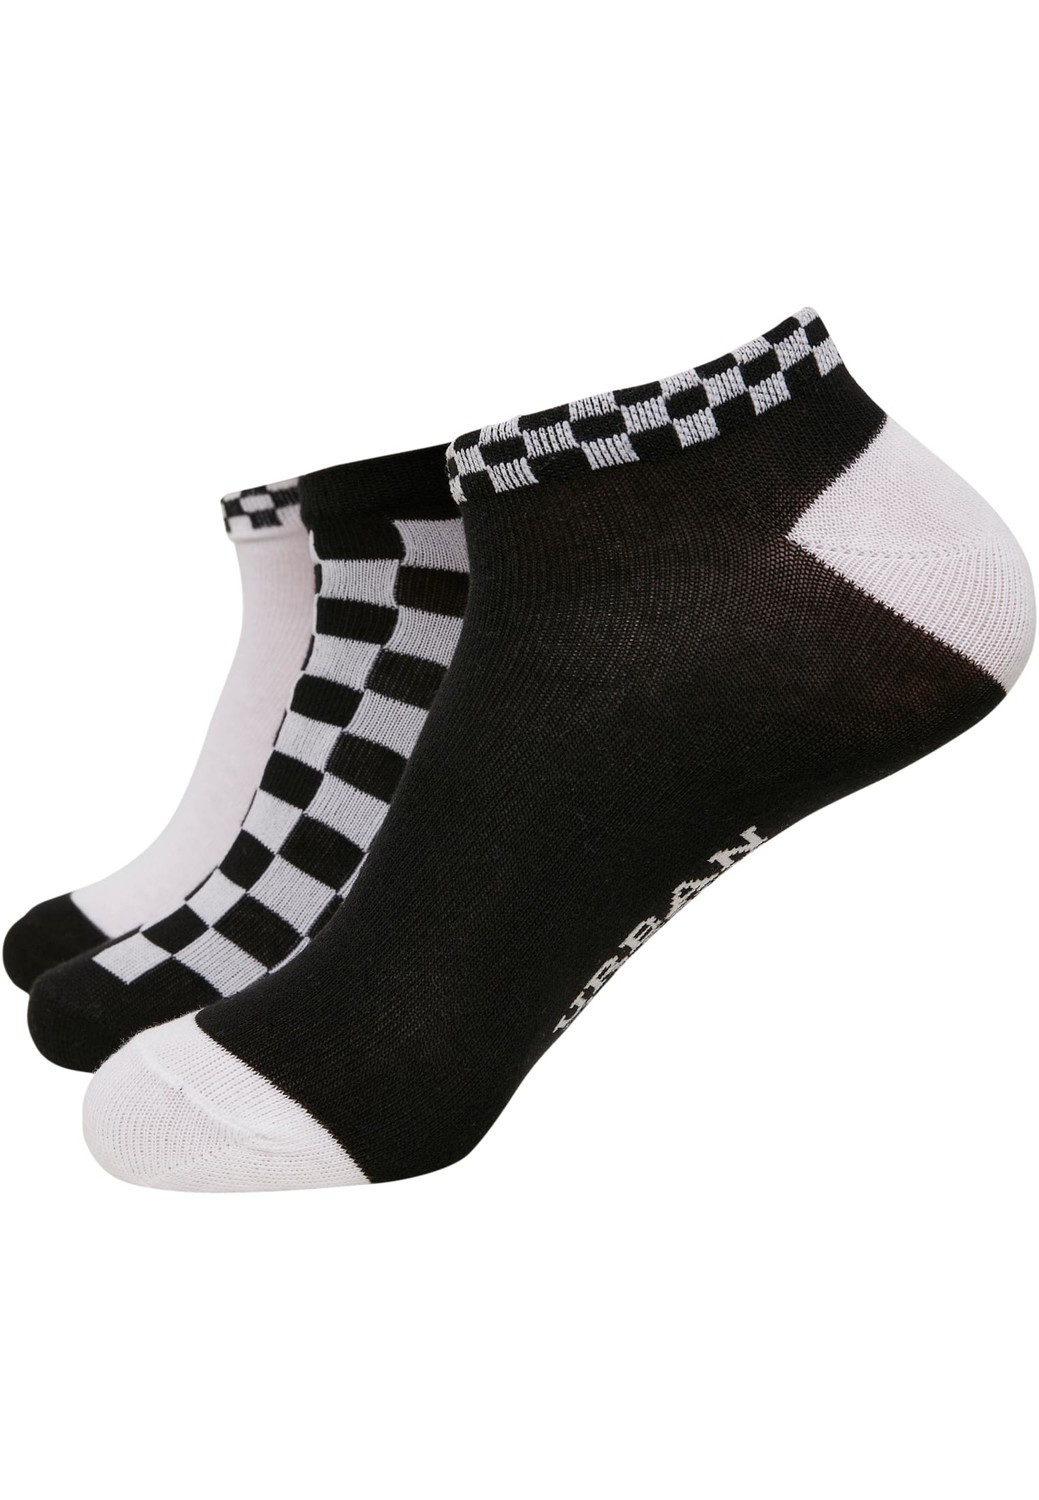 Sneaker Socks Checks 3-Pack black/white